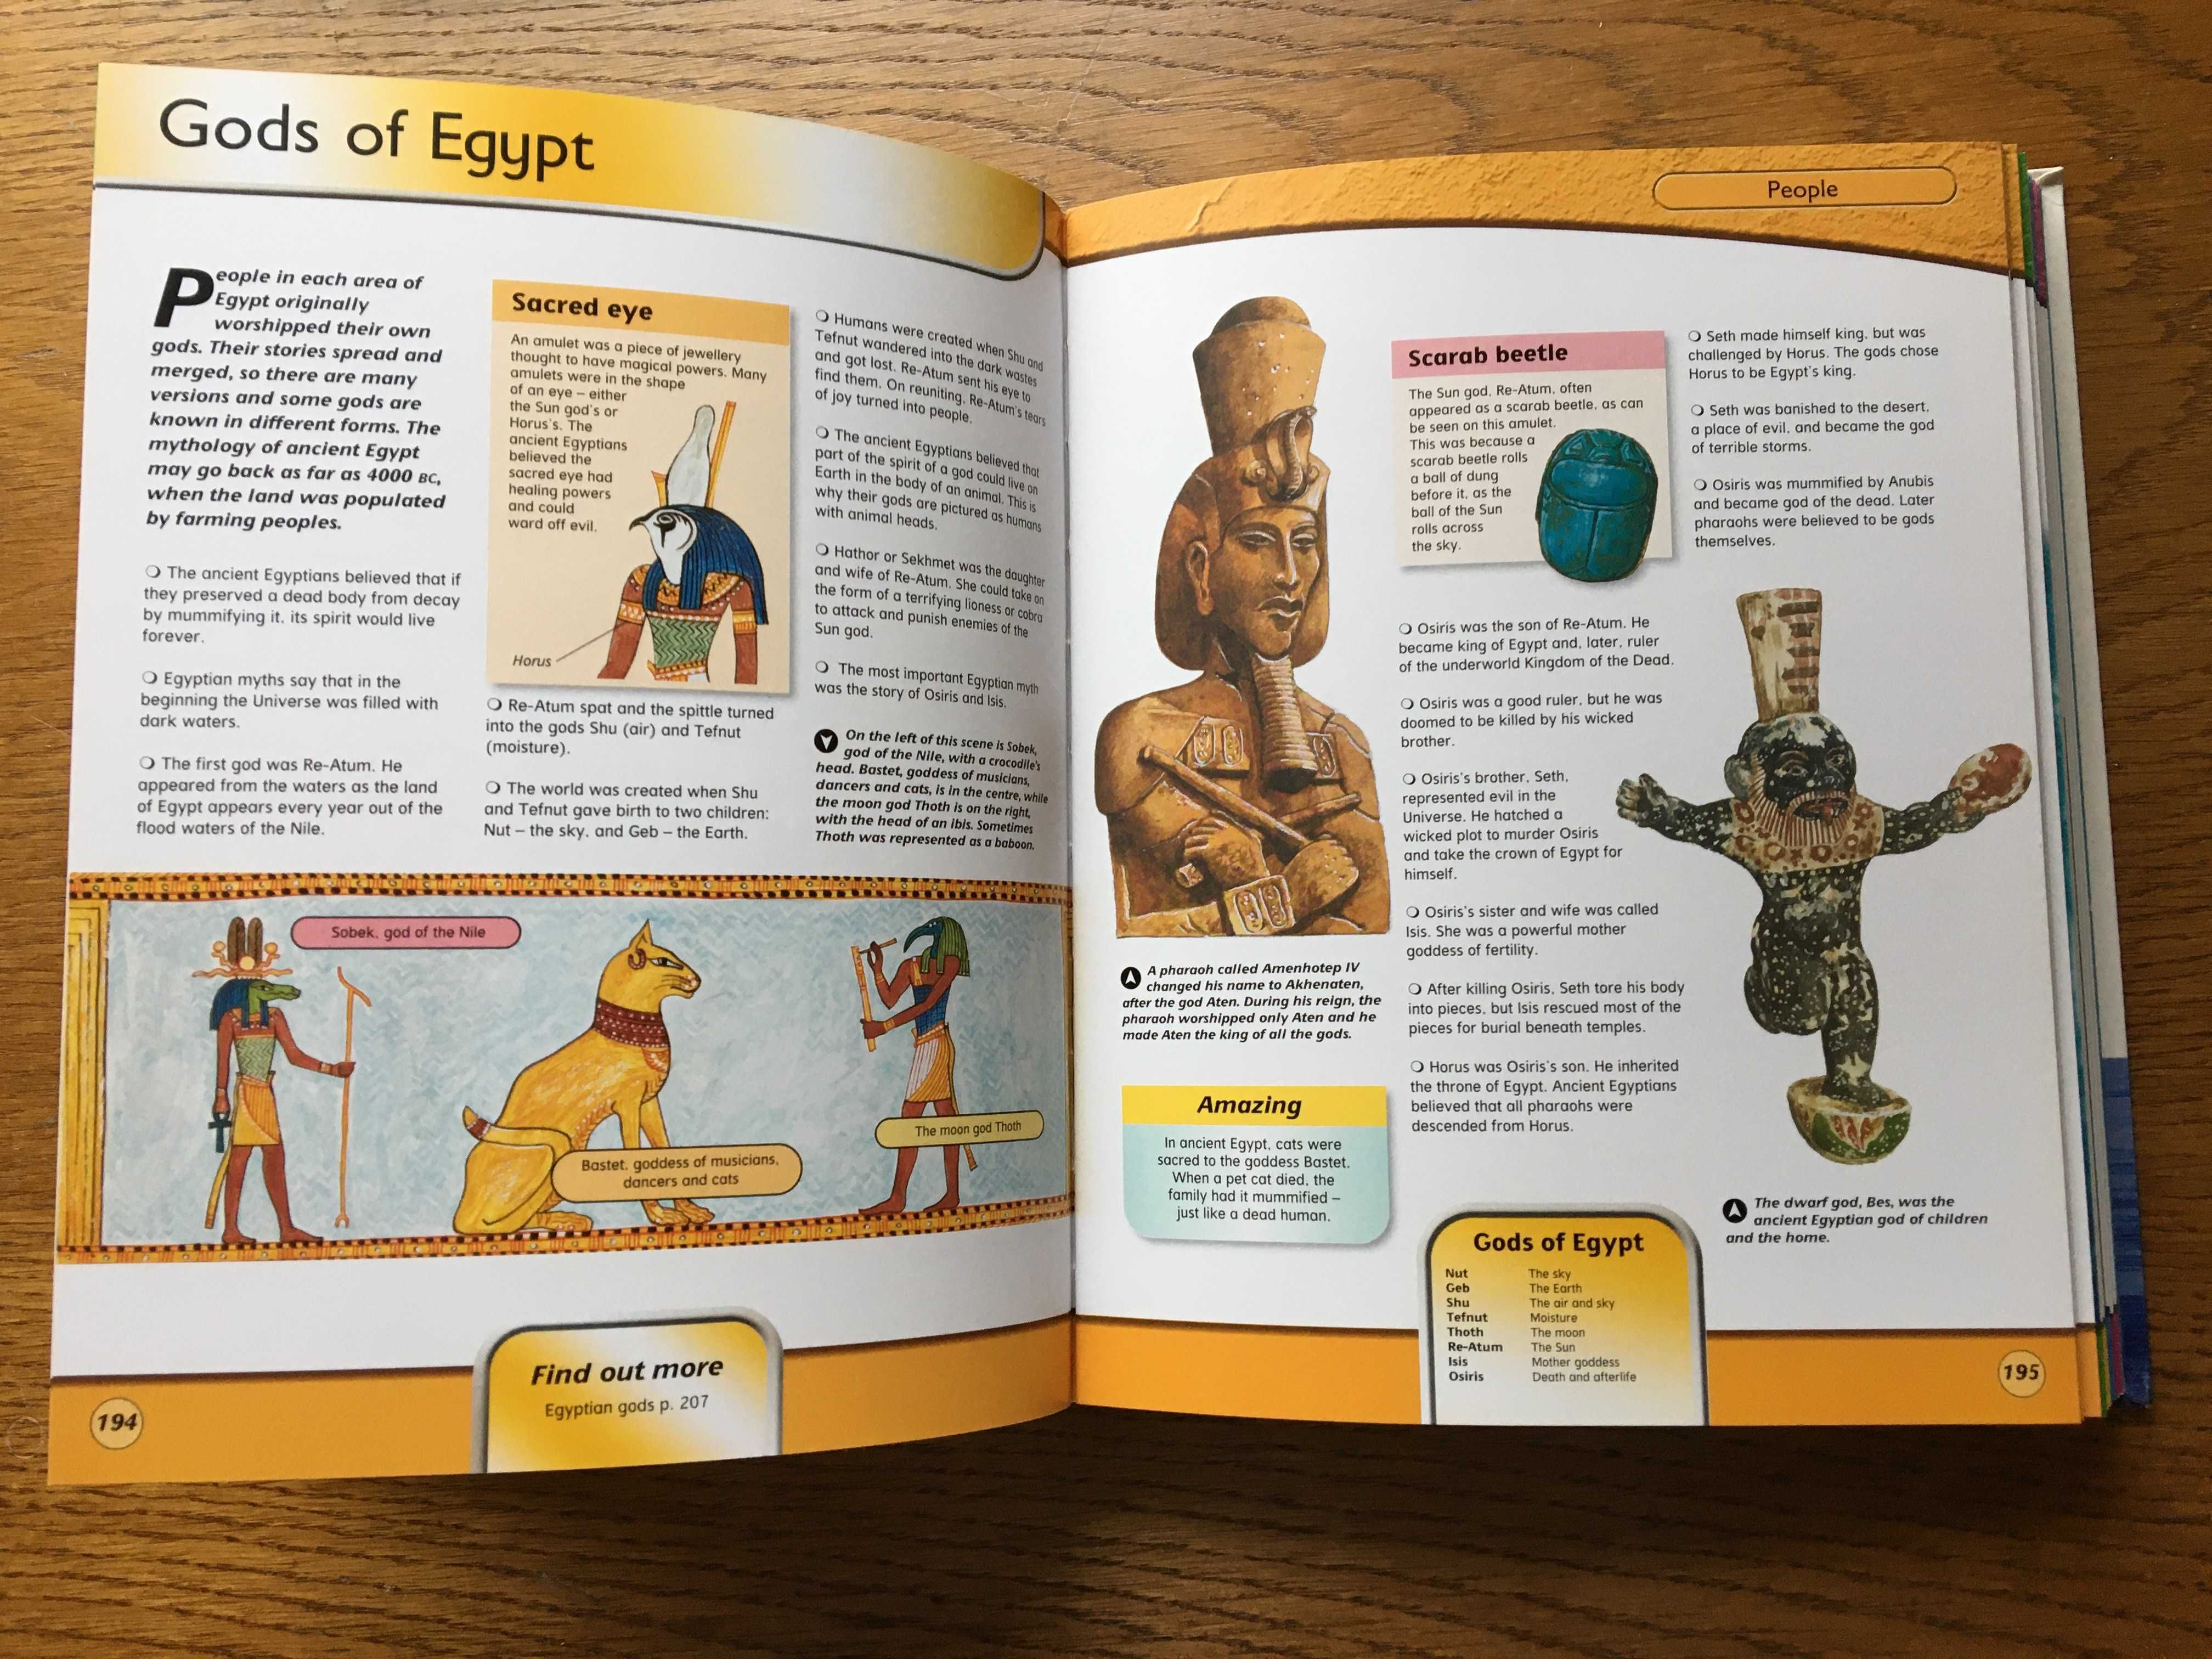 Enciclopedie pentru copii in limba engleza - 8-12 ani, peste 12 ani